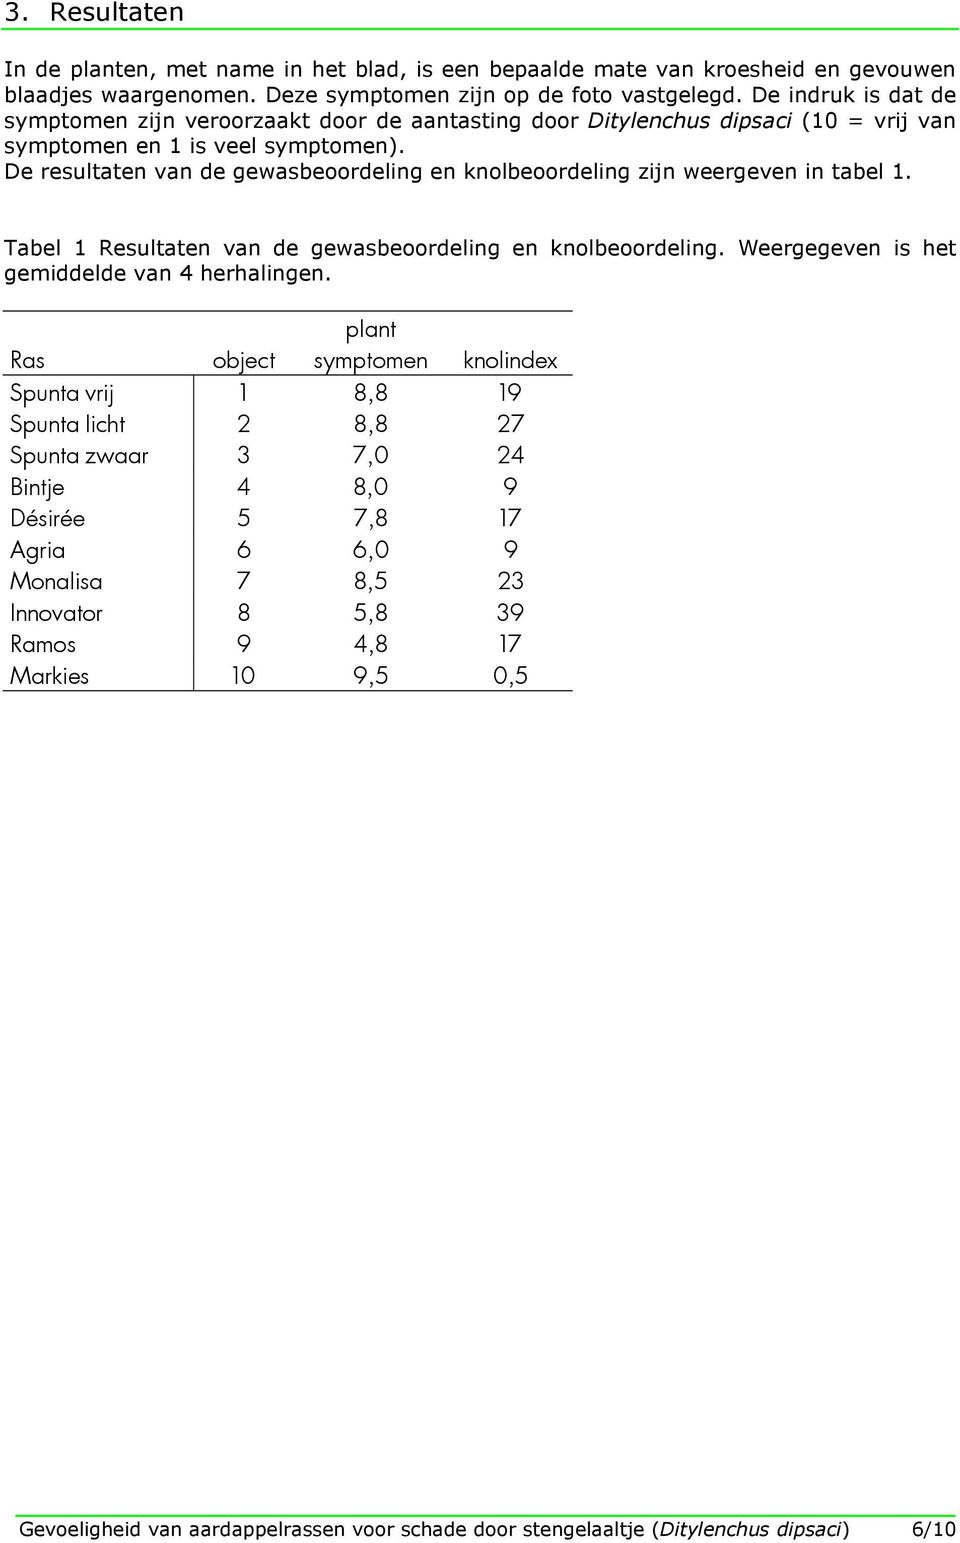 De resultaten van de gewasbeoordeling en knolbeoordeling zijn weergeven in tabel 1. Tabel 1 Resultaten van de gewasbeoordeling en knolbeoordeling. Weergegeven is het gemiddelde van 4 herhalingen.